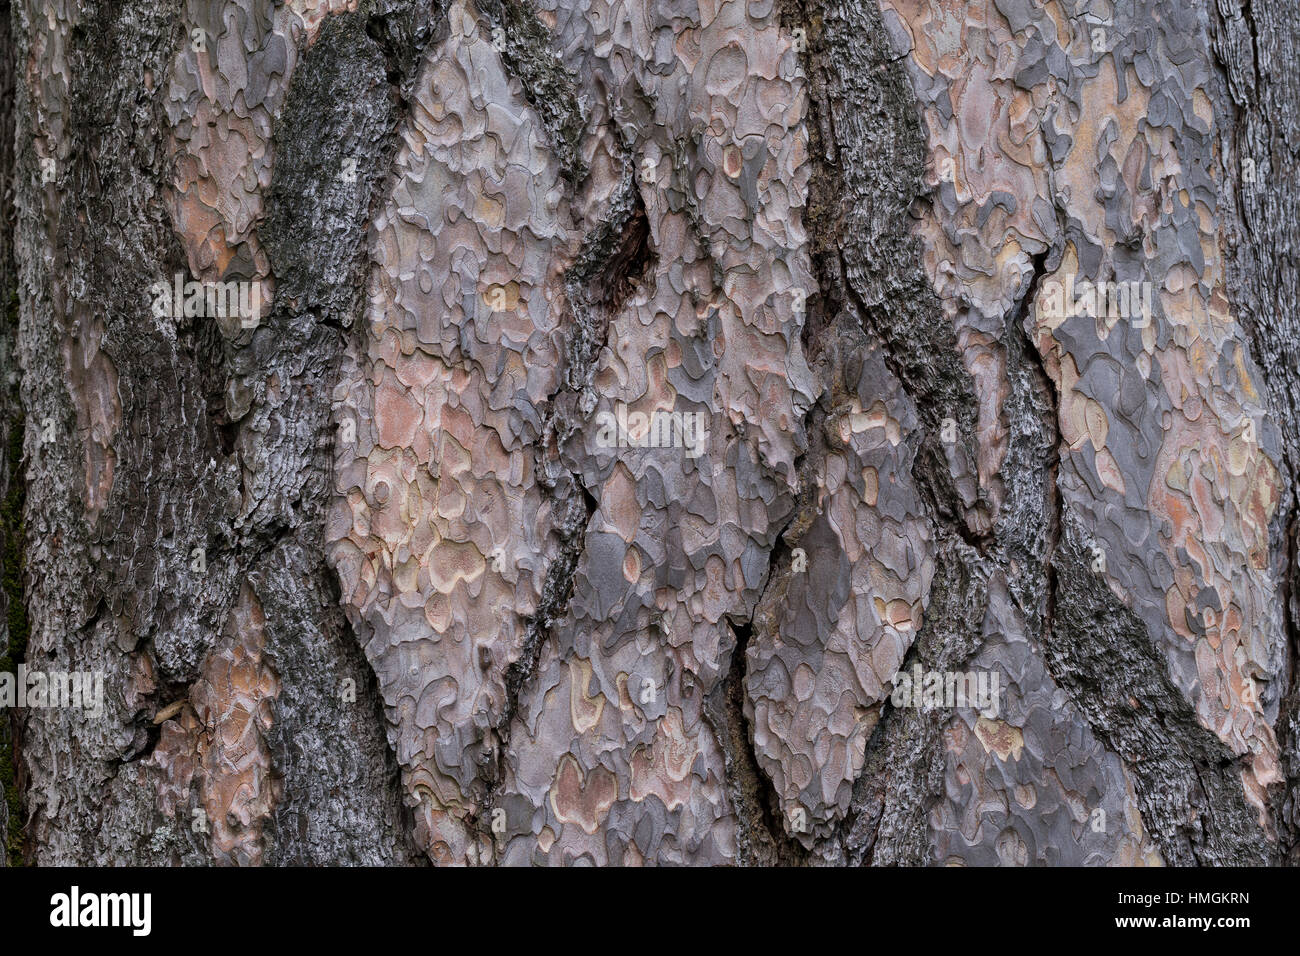 Schwarz-Kiefer, Schwarzkiefer, Kiefer, Rinde, Borke, Stamm, Pinus nigra, Pinus austriaca, Black Pine, bark, rind Stock Photo